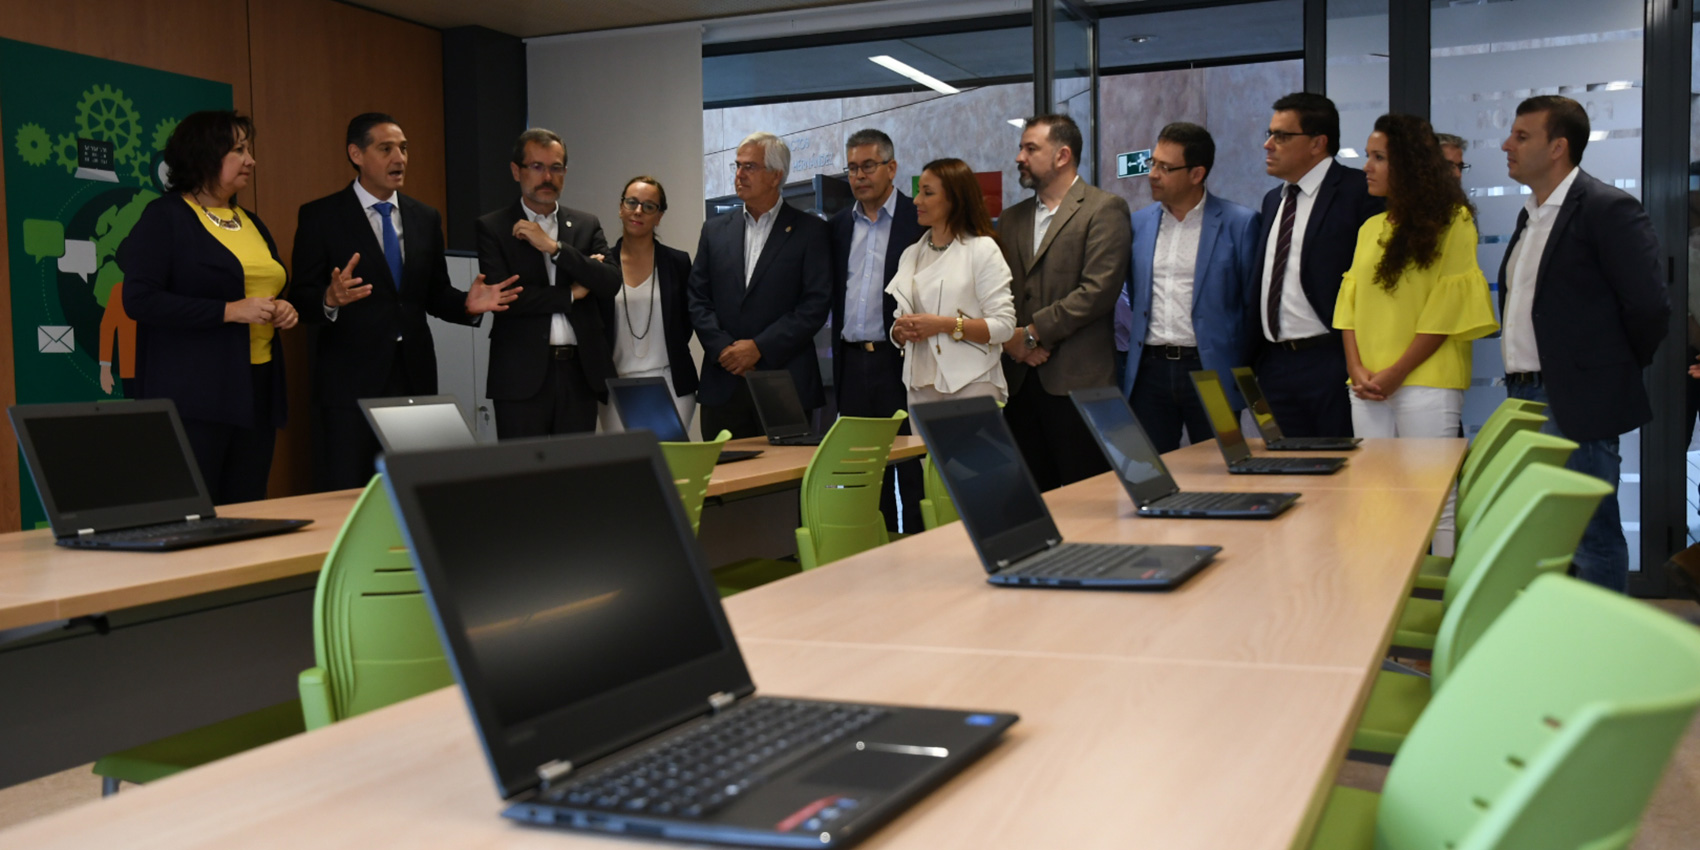 El 'Aula Microsoft' ha sido inaugurada con el apoyo del Cabildo de Fuerteventura...